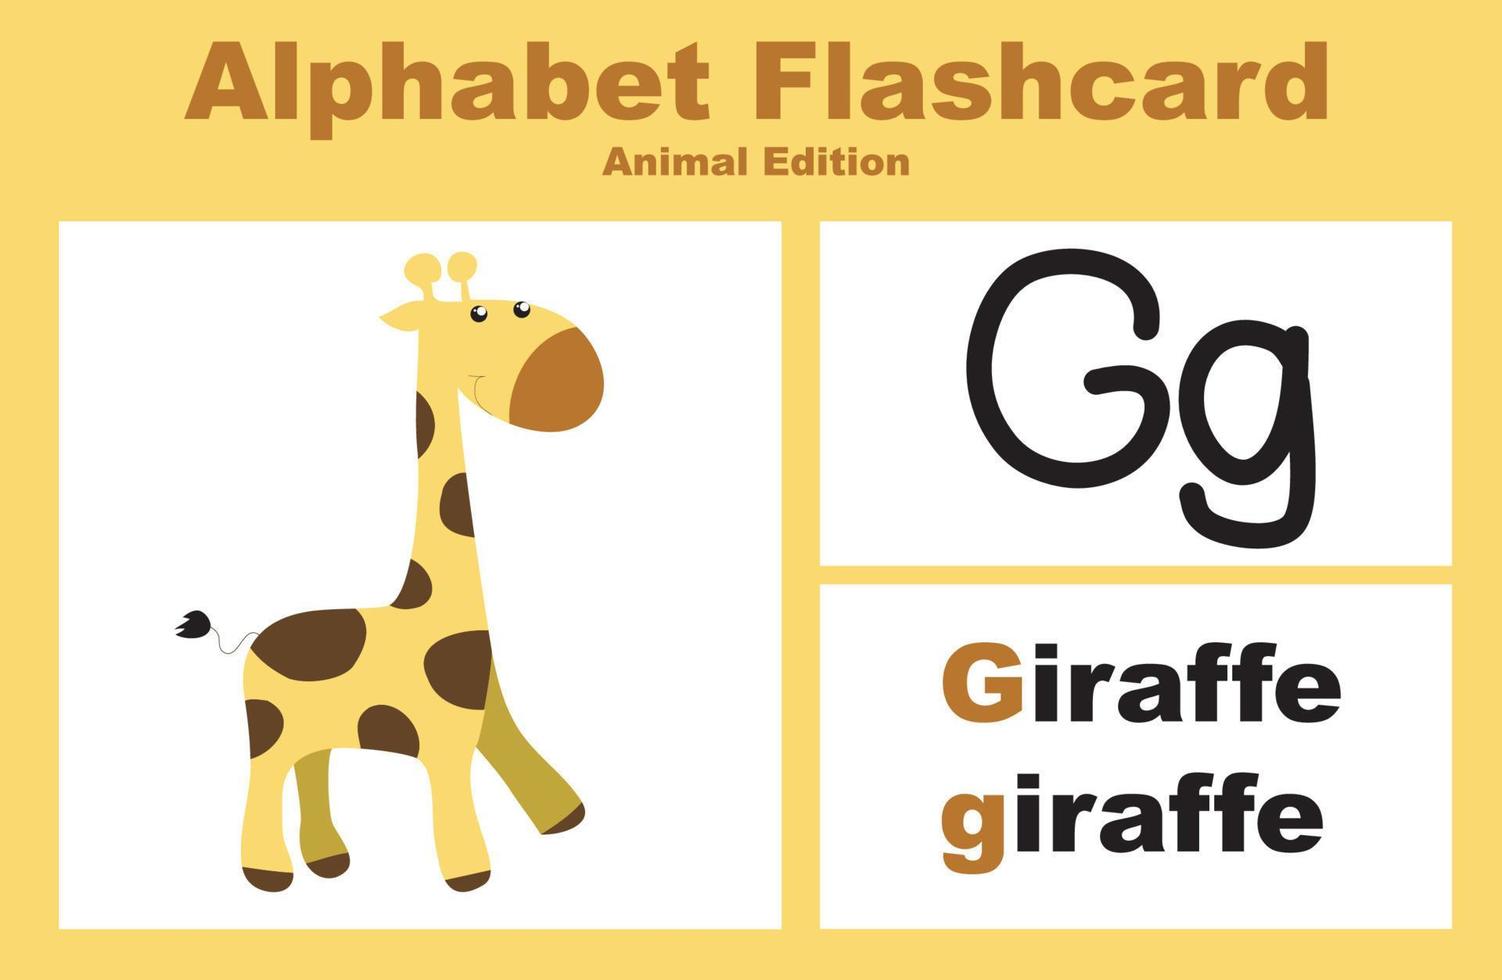 conjunto de vectores alfabeto flashcard con tema animal. hoja de trabajo imprimible educativa. lindo tema de hoja de trabajo de animales. ilustraciones vectoriales.